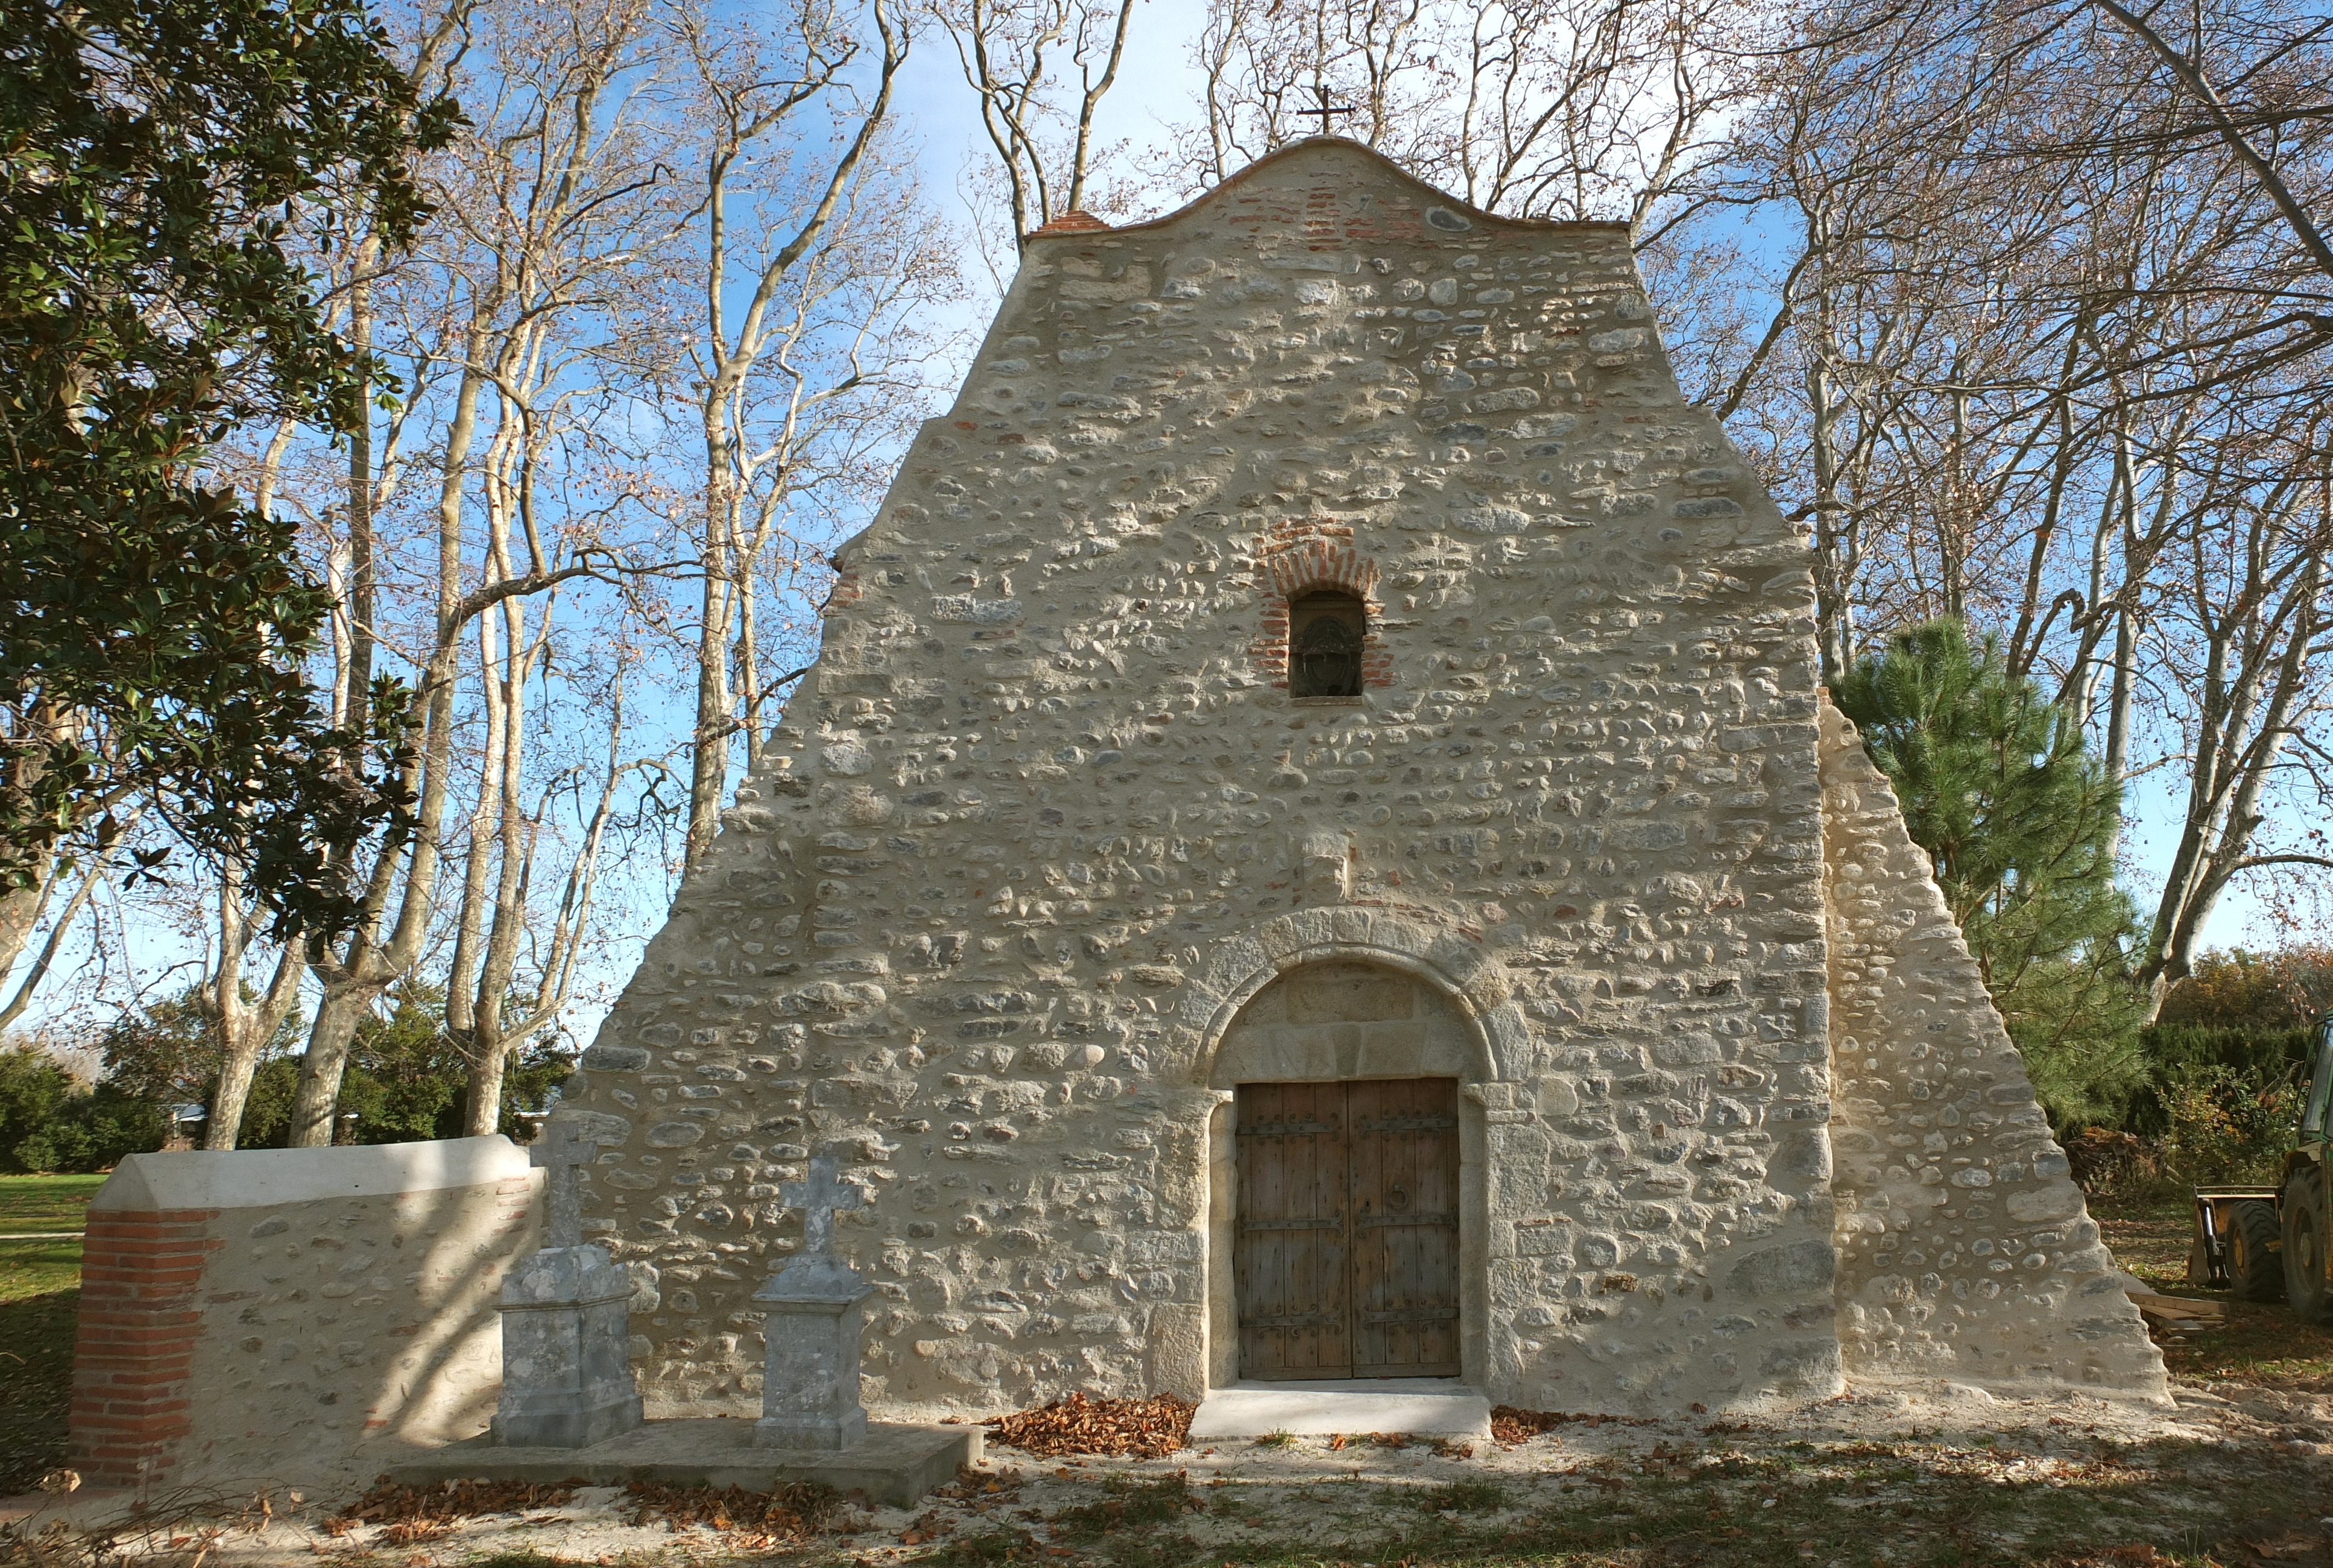 Palau chapelle villeclare